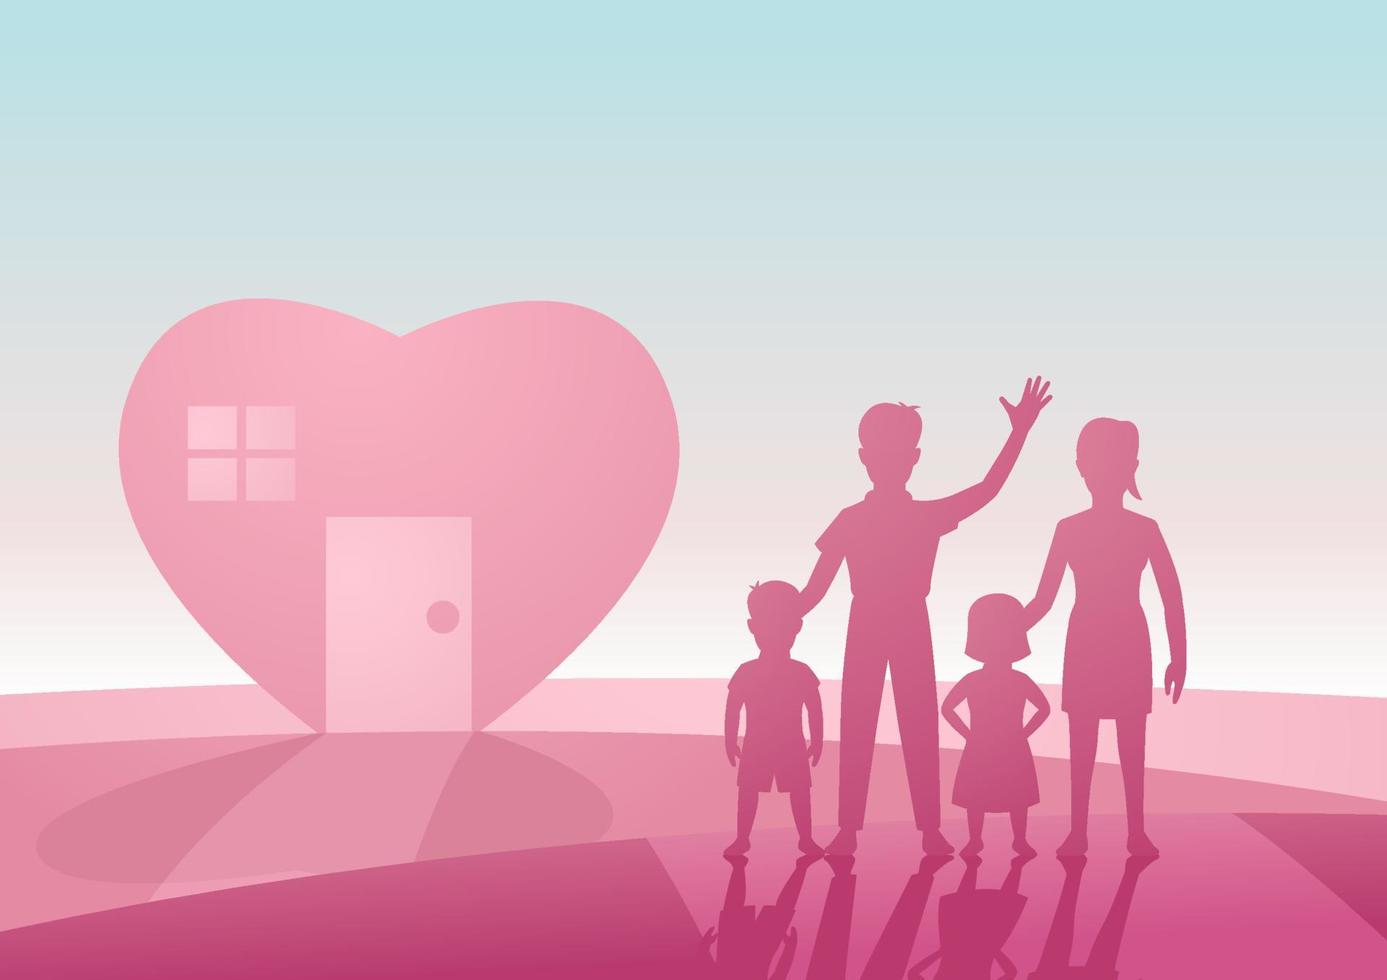 konceptkonst av härlig och lycklig familj med hjärtform hus i rosa och svart färg genom siluettdesign vektor